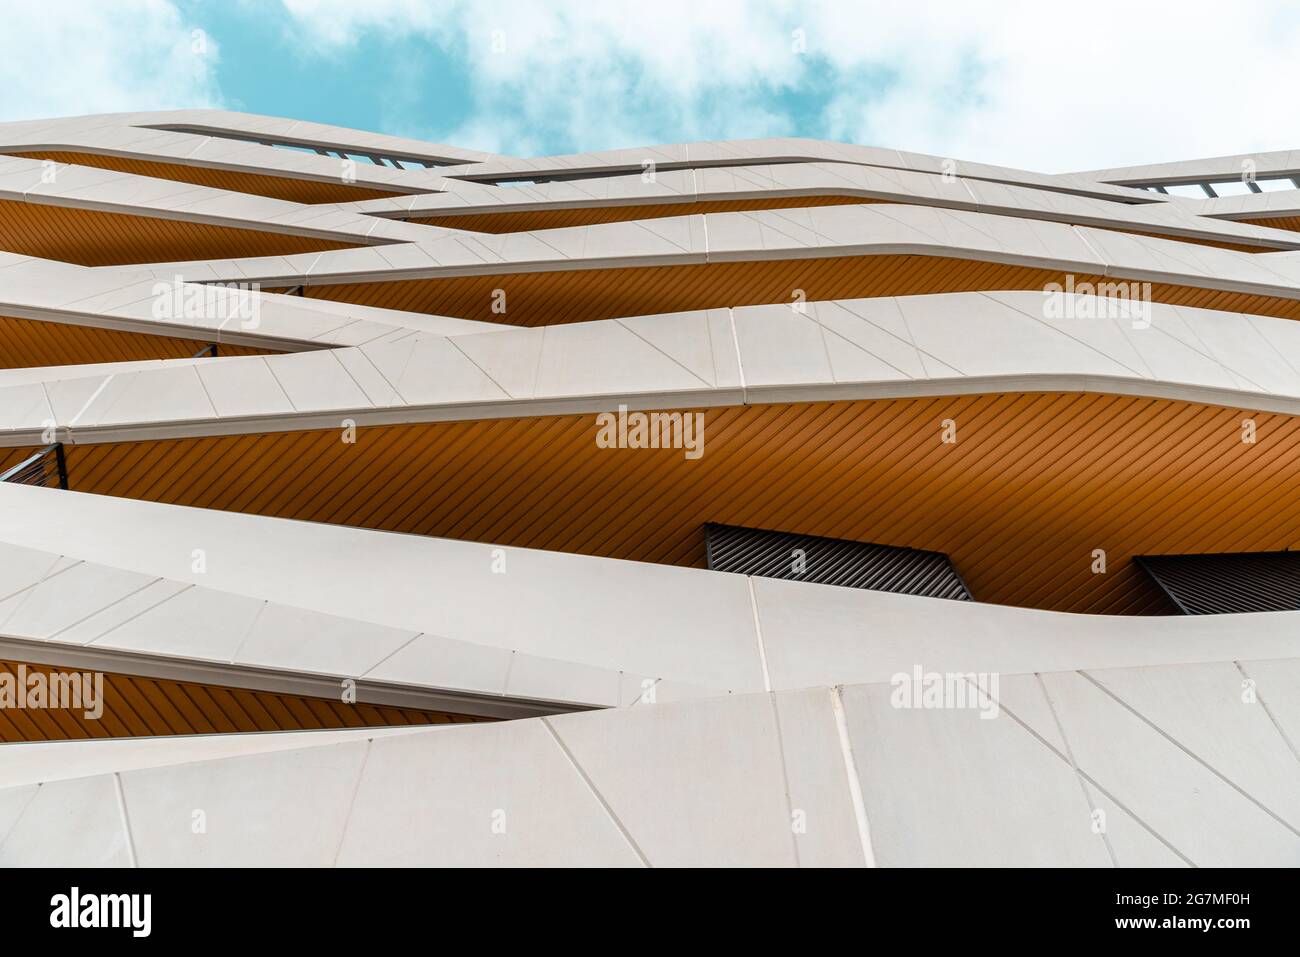 Madrid, Spanien - 7. März 2021: Neues luxuriöses Wohngebäude mit durchgehenden Betonfertigterrassen. Mendez Alvaro Stockfoto